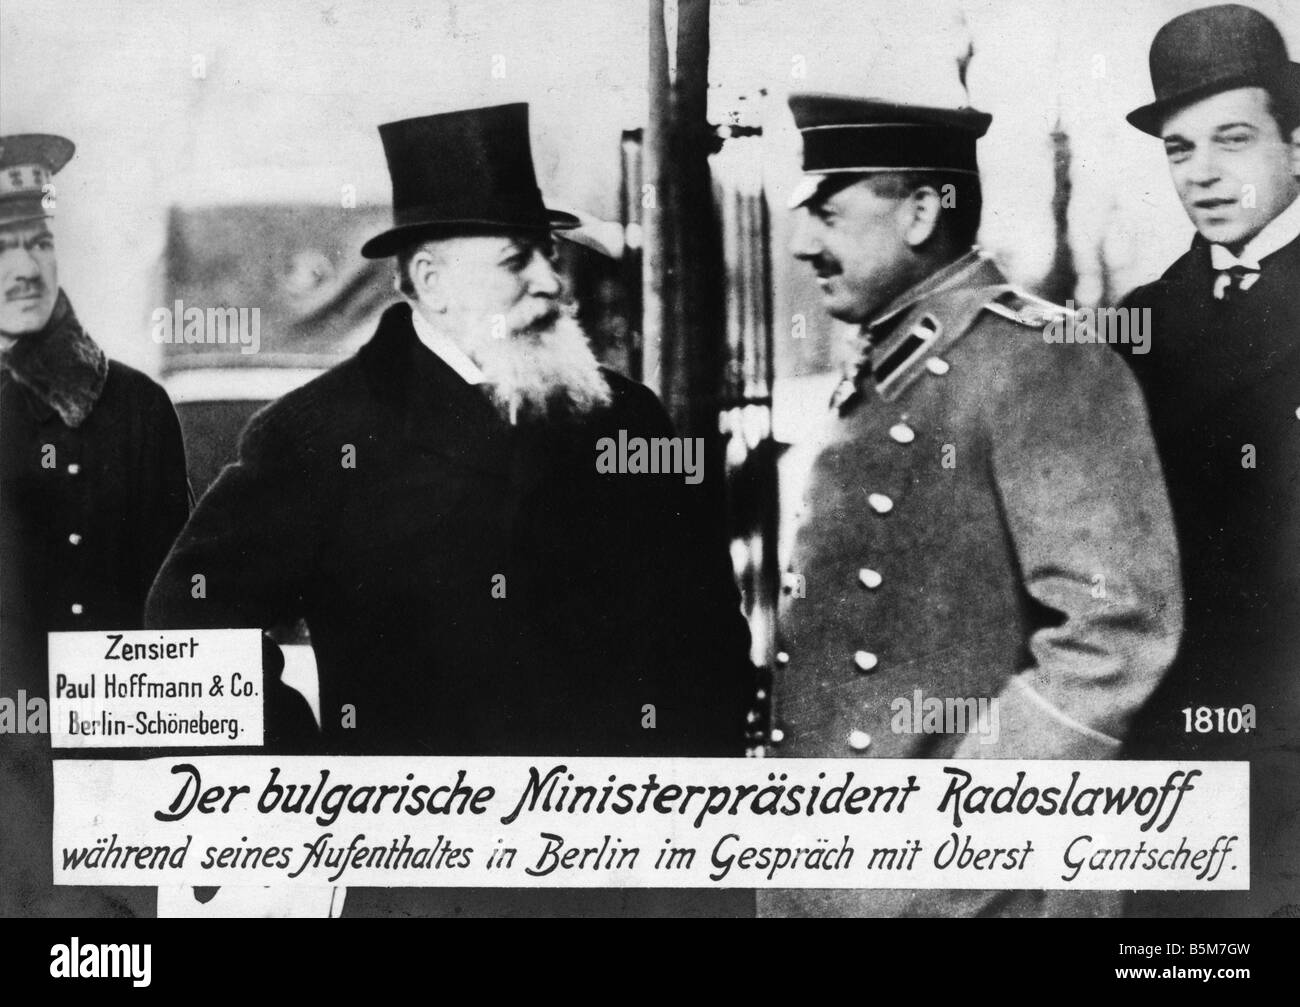 1BU 31 F1915 E Radoslavov Col Gantscheff in Berlin Radoslavov Vassil Bulgarian politician Prime Minister 1886 and 1913 18 11 Mar Stock Photo